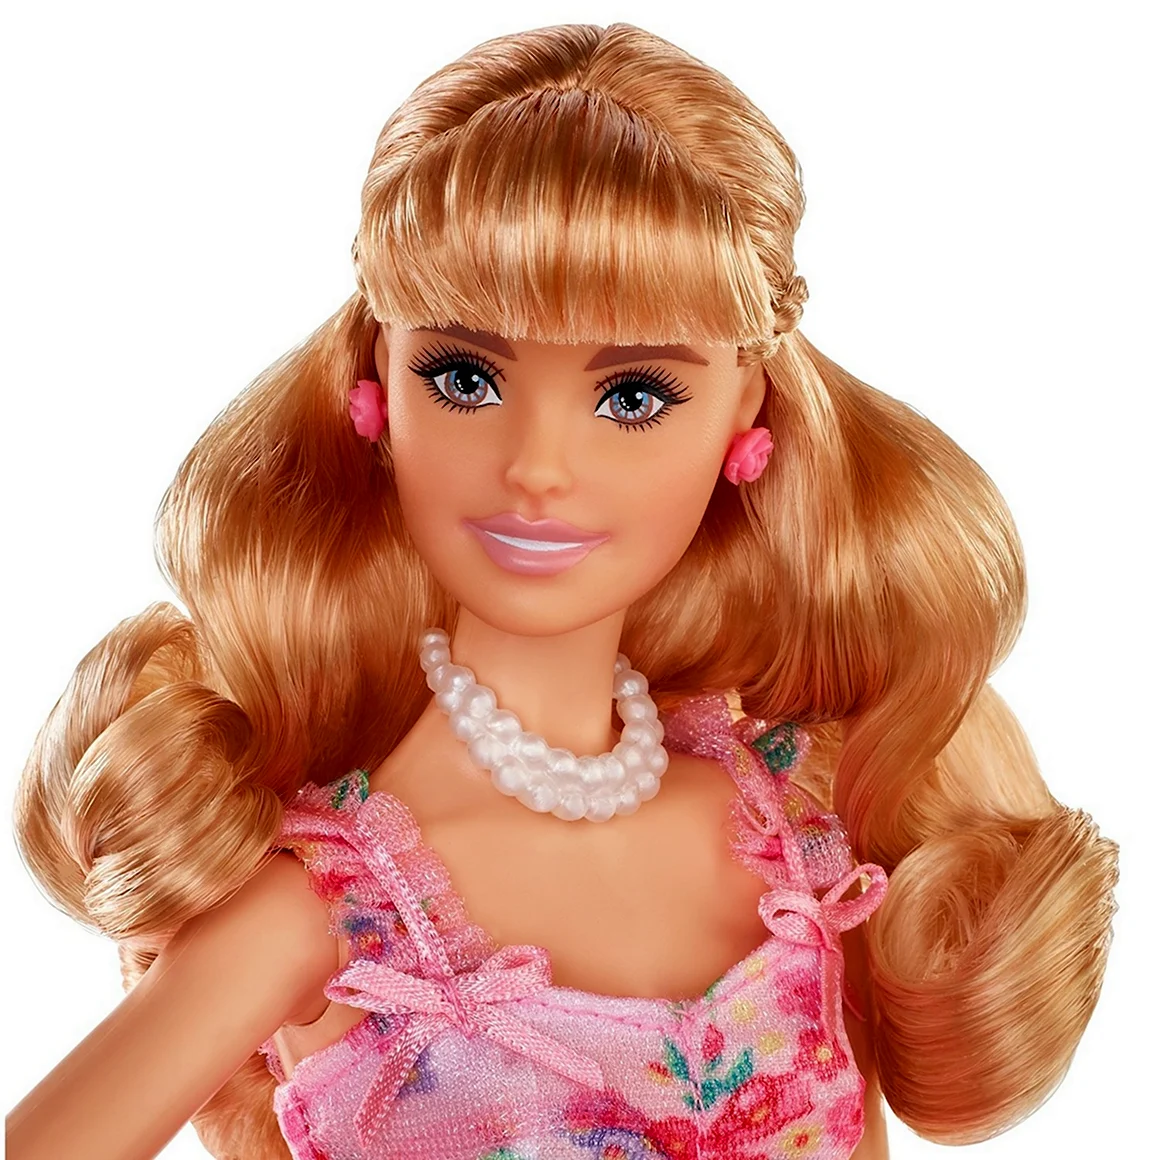 Кукла Barbie Birthday Wishes